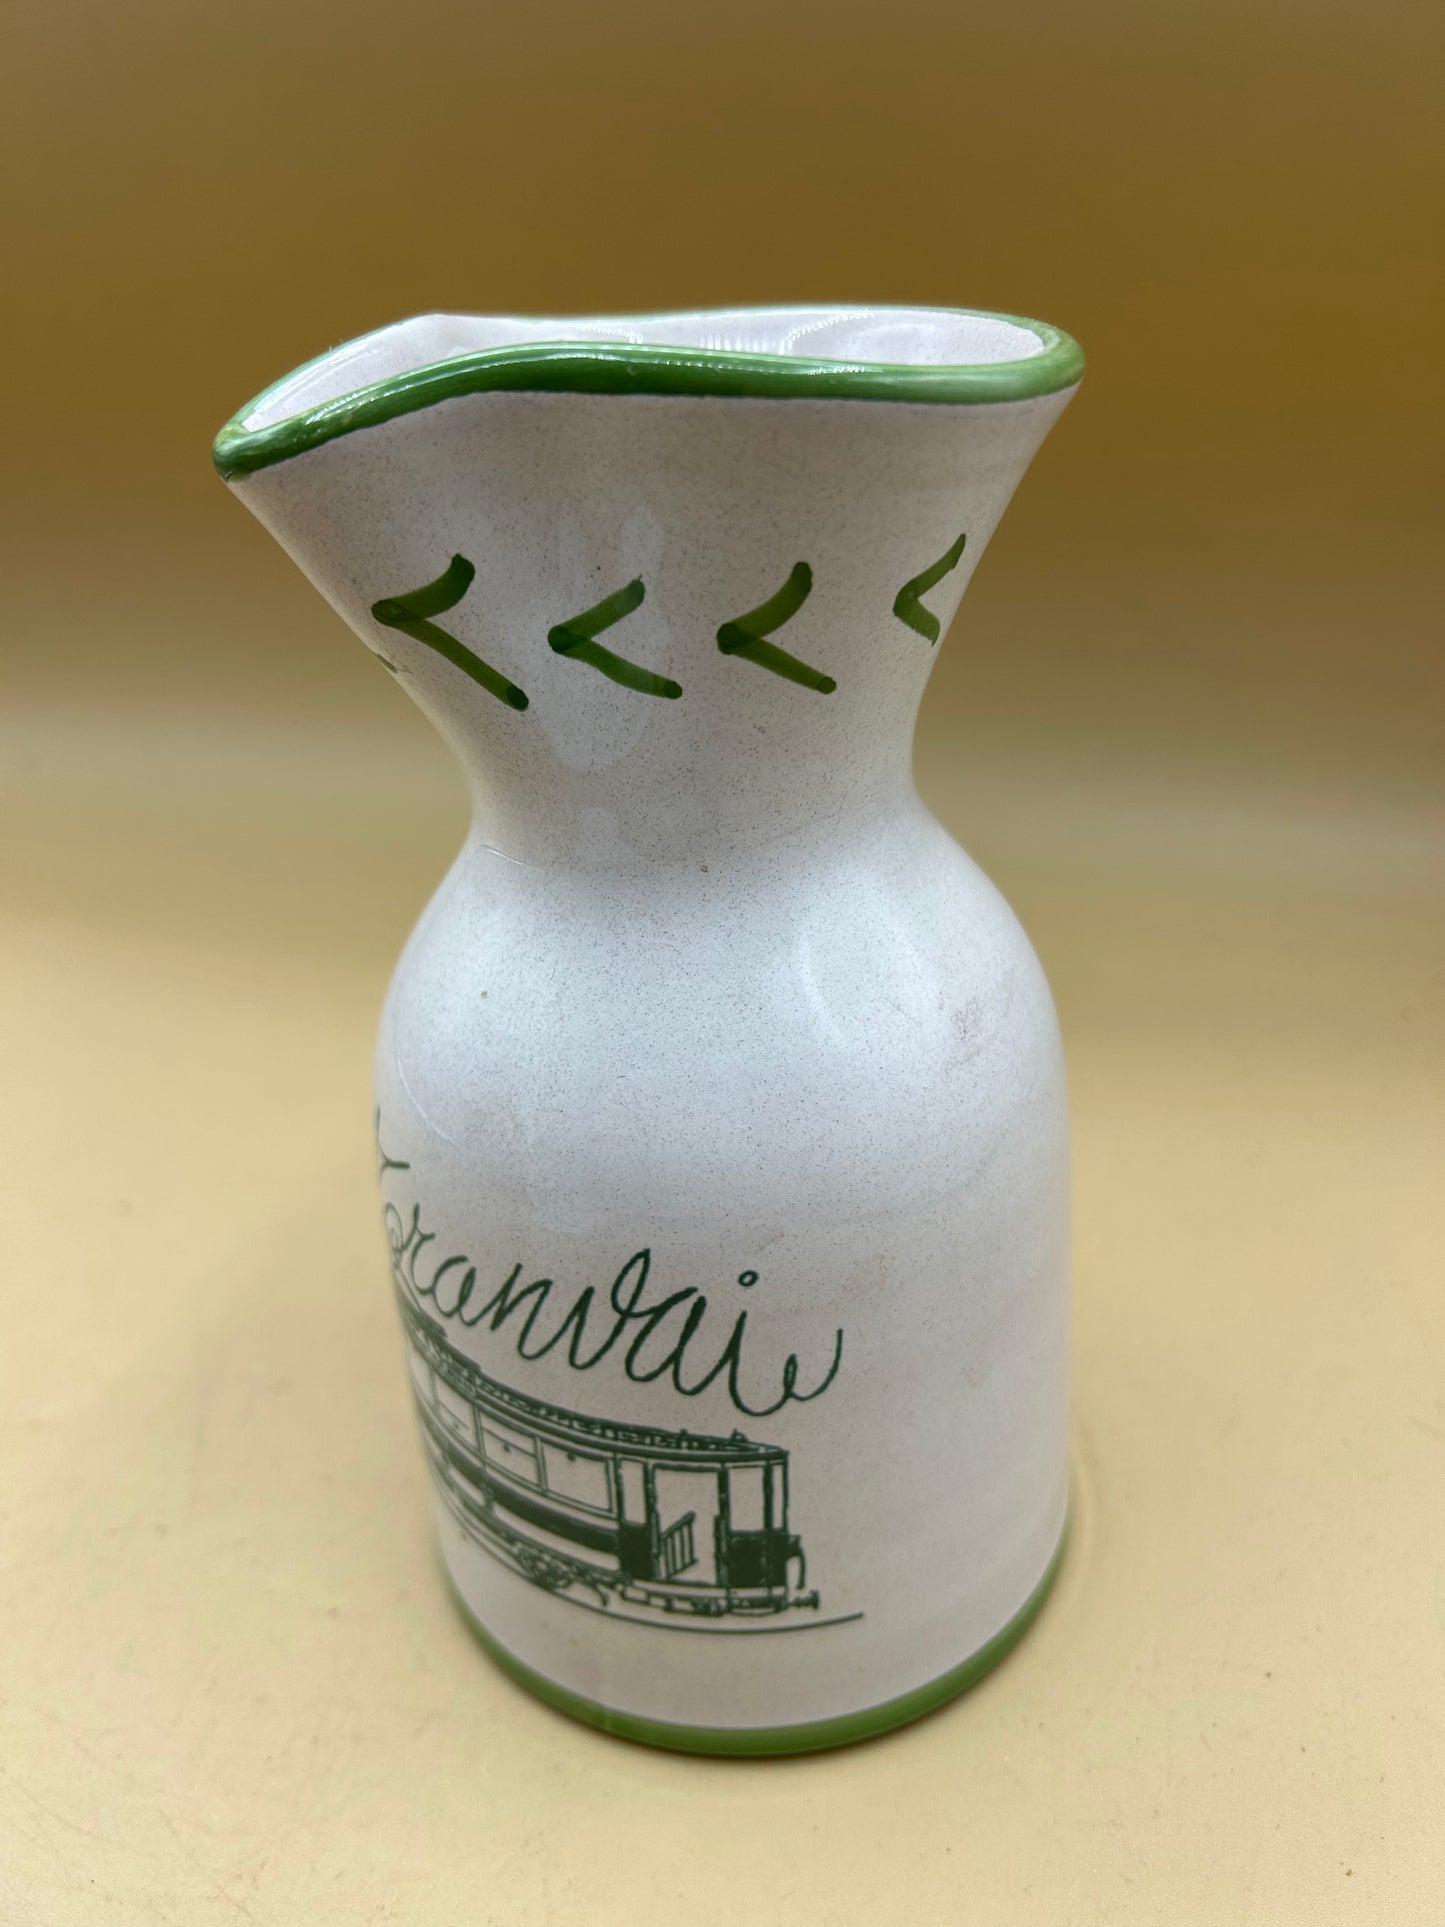 Tramvai Torretti Deruta Keramikkrug, handbemalte Flasche für Wasser oder Wein mit Straßenbahndesign